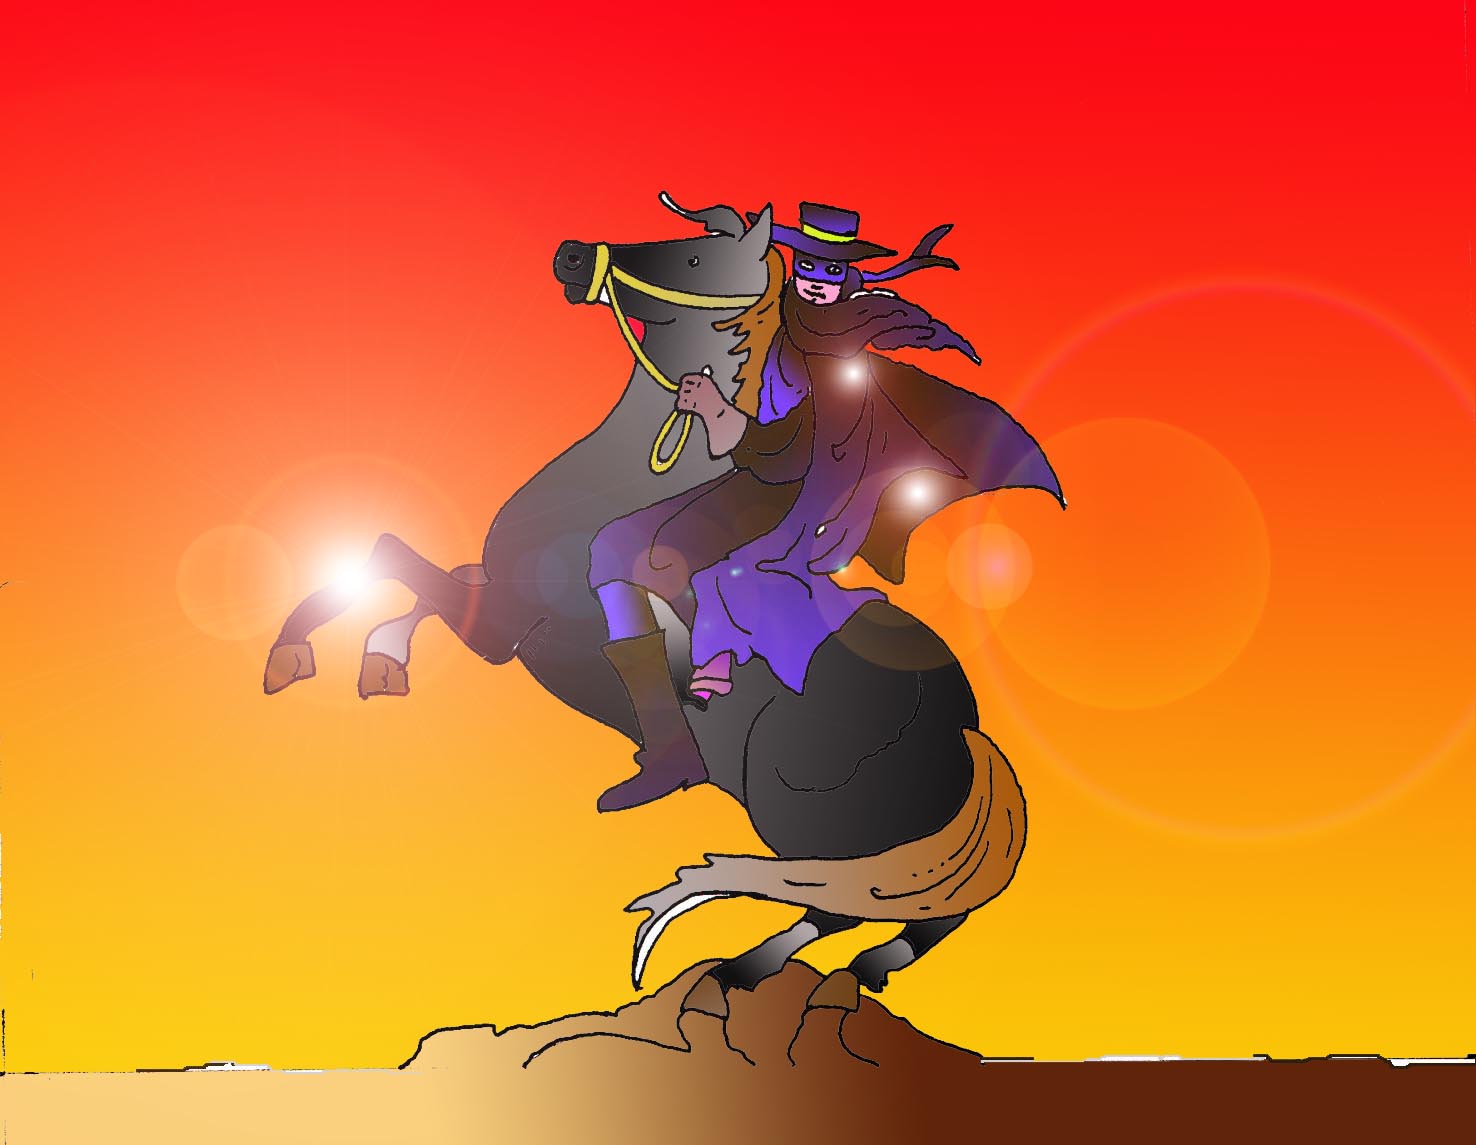 Immagine di Zorro in figura intera (Per leggerne la descrizione proseguire nel link). L'eroe sull'impennato cavallo, l'andaluso nero di nome Tornado. E' vestito di nero, con un mantello viola scuro a contrasto, il cappello da cowboy e la maschera sugli occhi. Sullo sfondo la luce del tramonto.